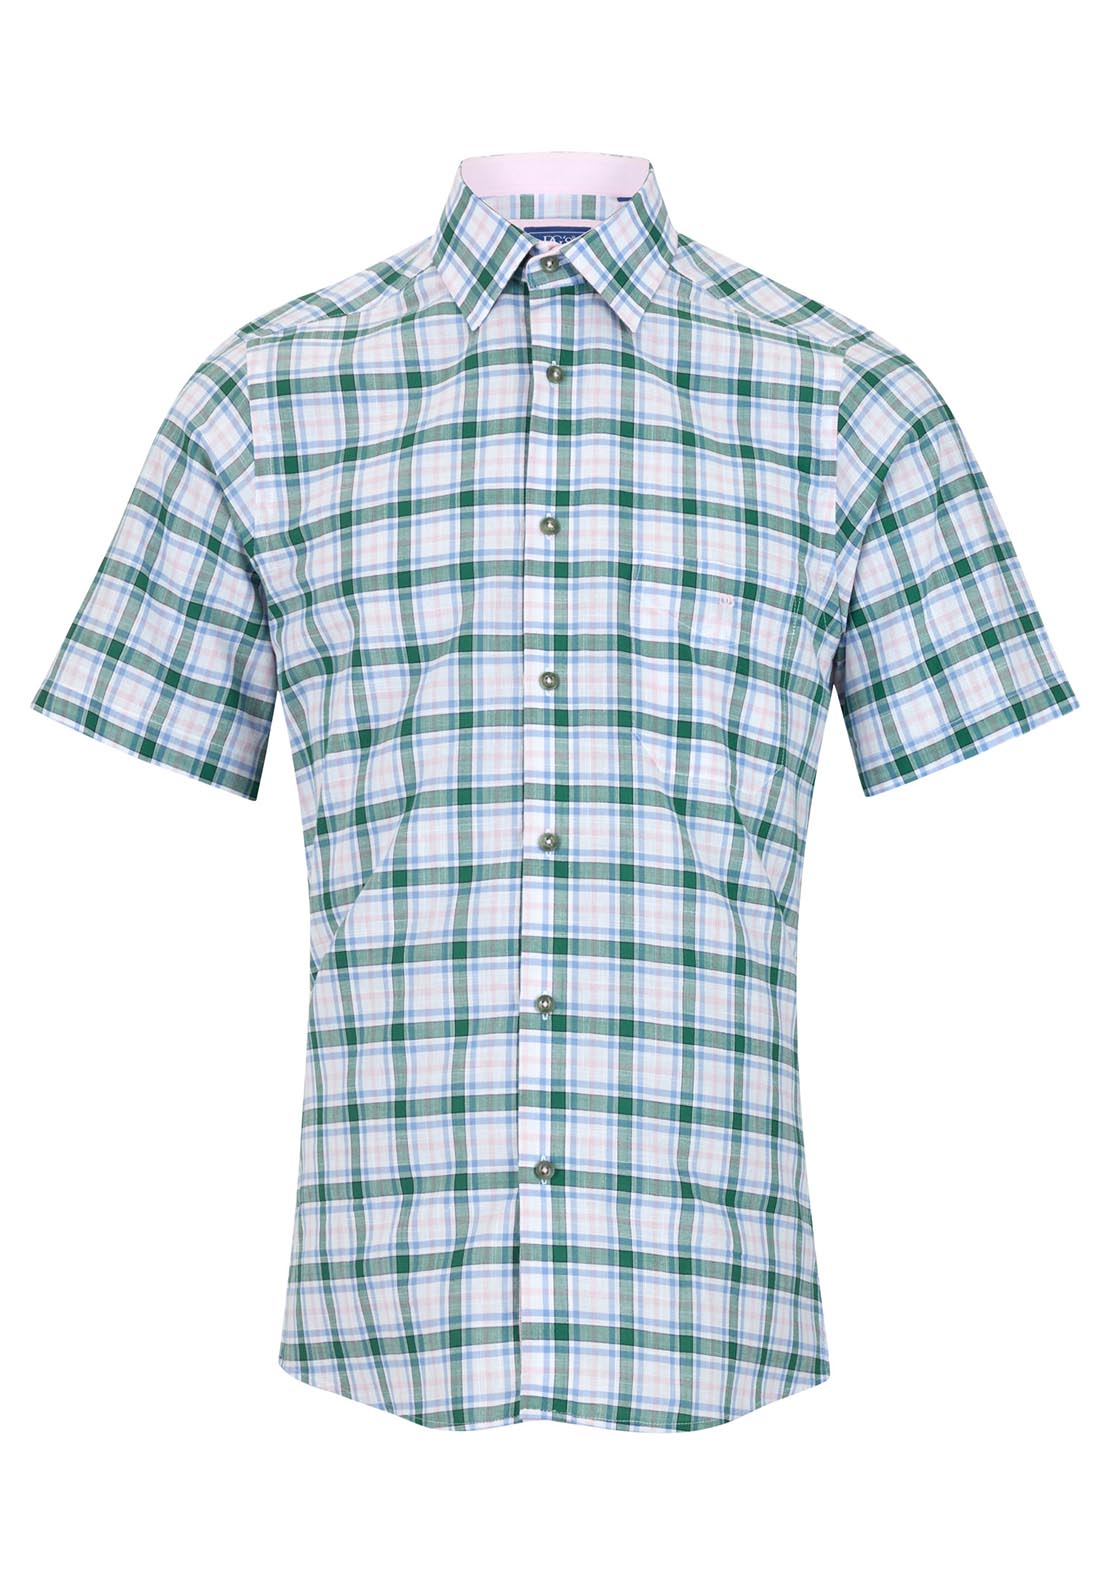 Drifter Short Sleeve Check Shirt - Green 1 Shaws Department Stores